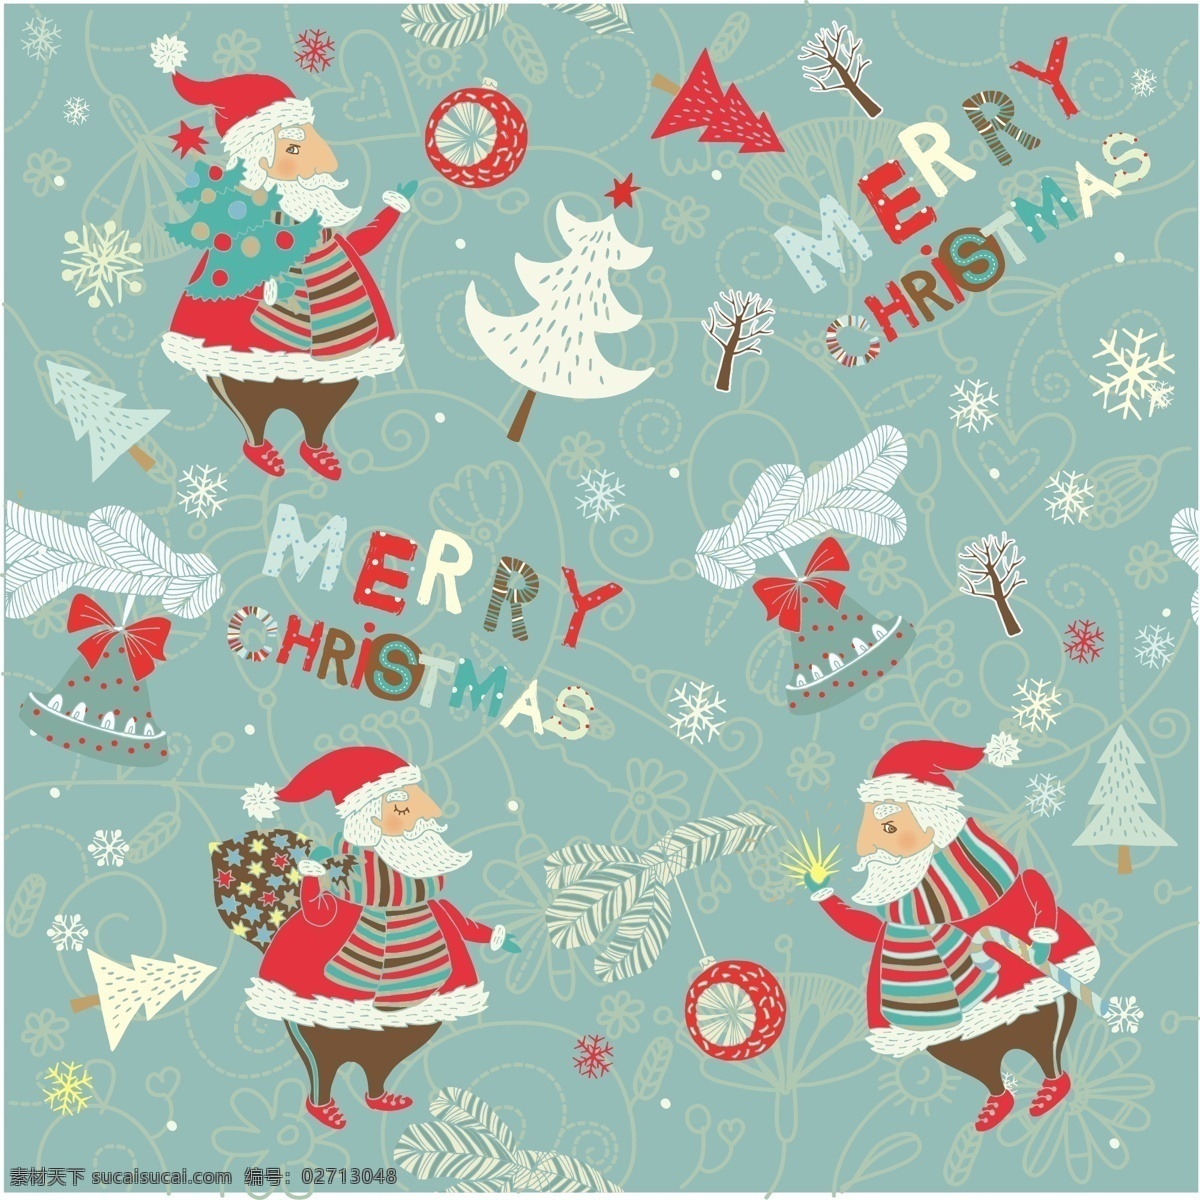 壁纸 可爱的 圣诞老人 可爱 克劳斯 克劳斯的壁纸 向量 自由 雪人 矢量 矢量图 其他矢量图